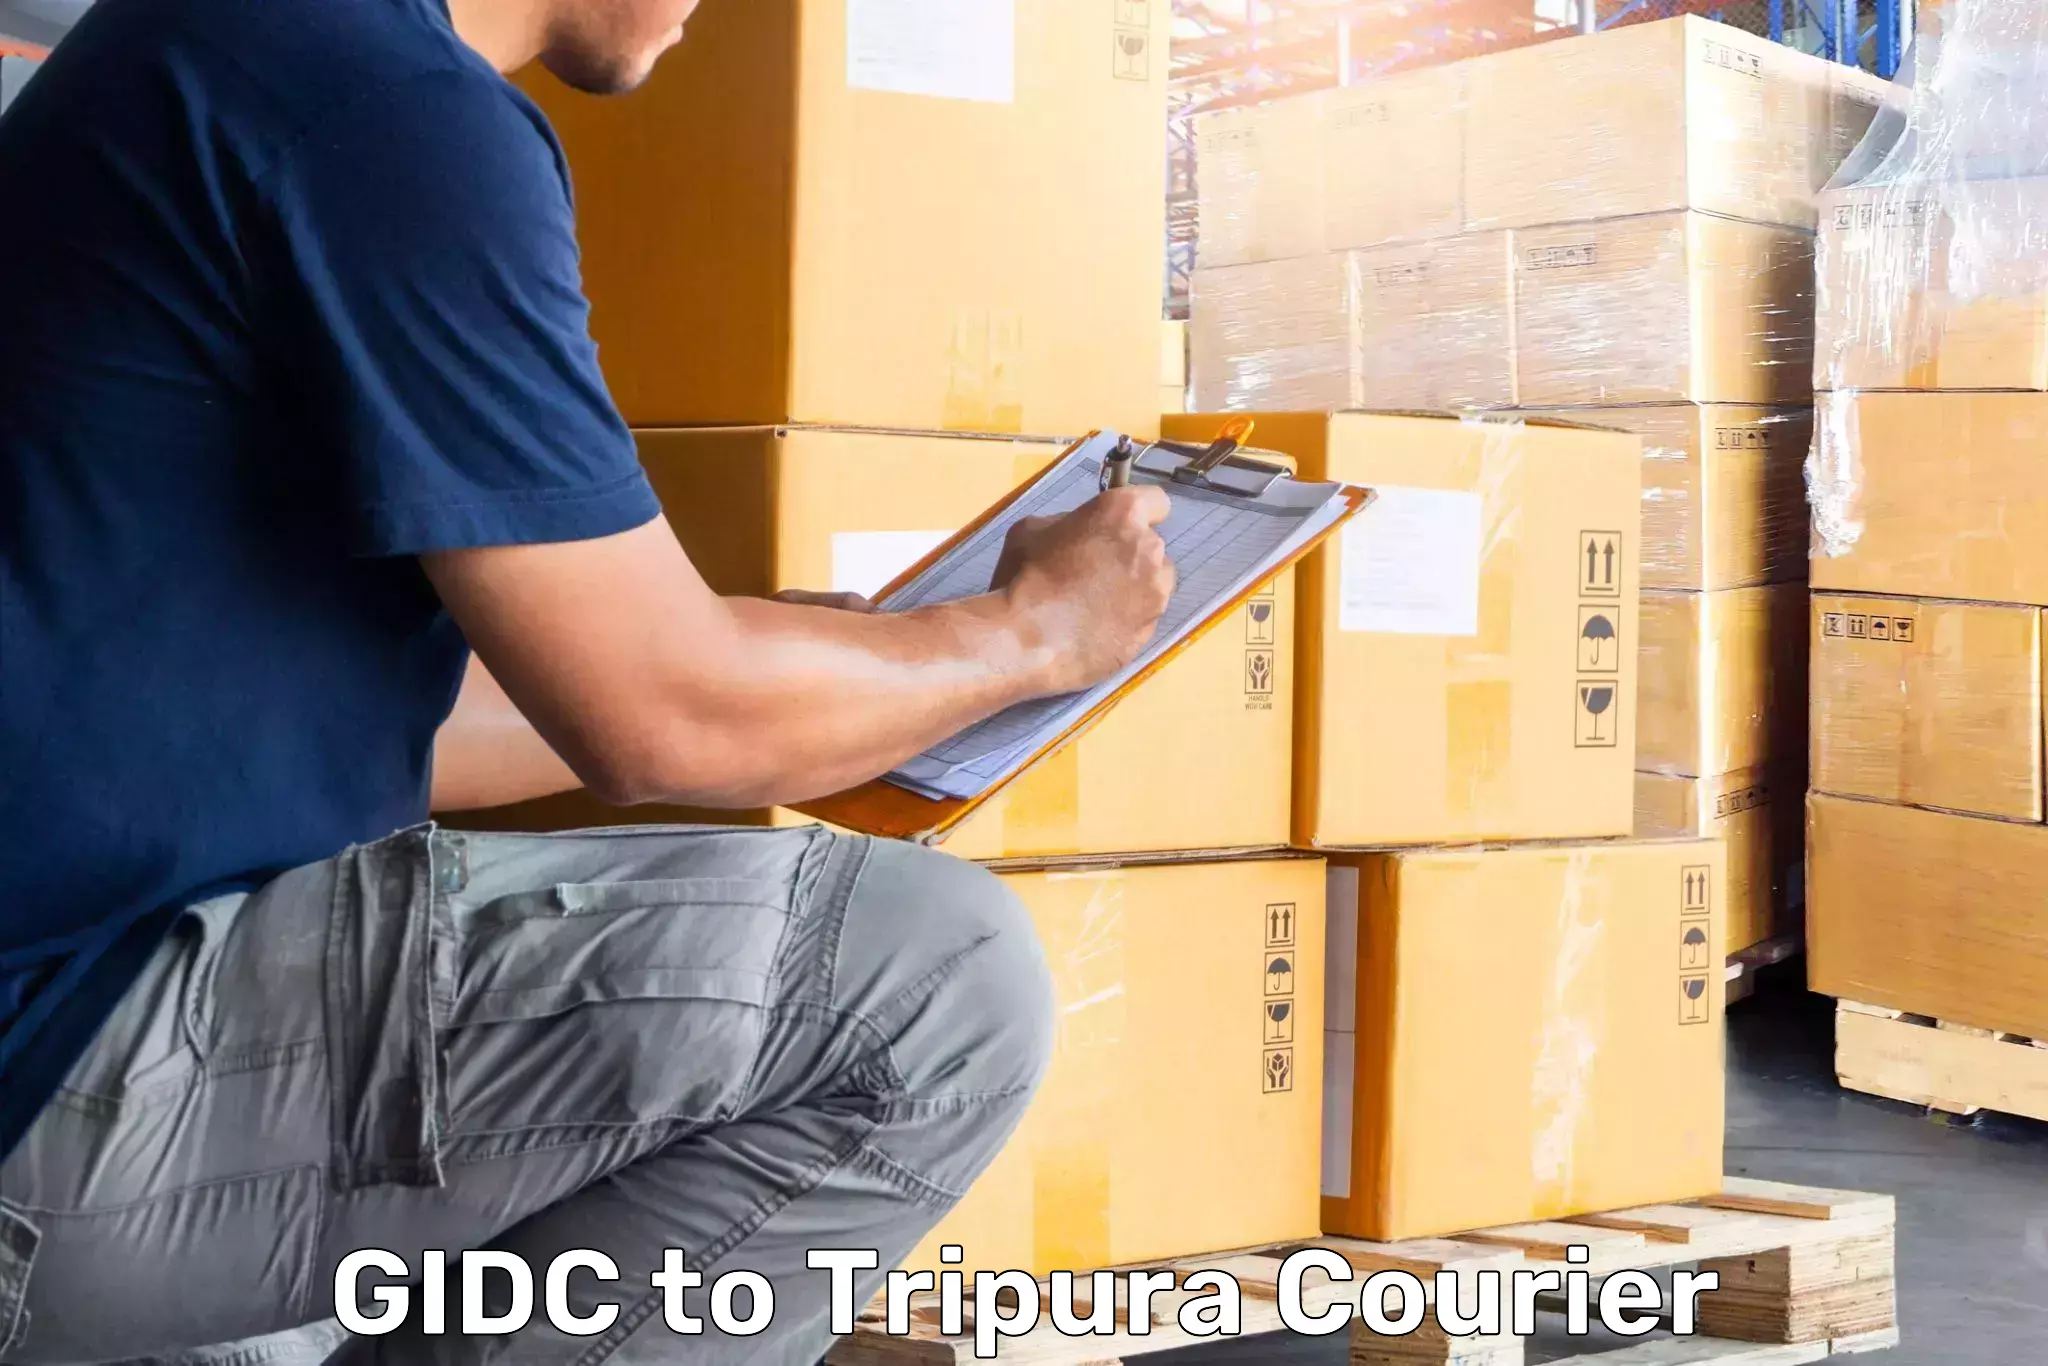 Hassle-free luggage shipping GIDC to IIIT Agartala